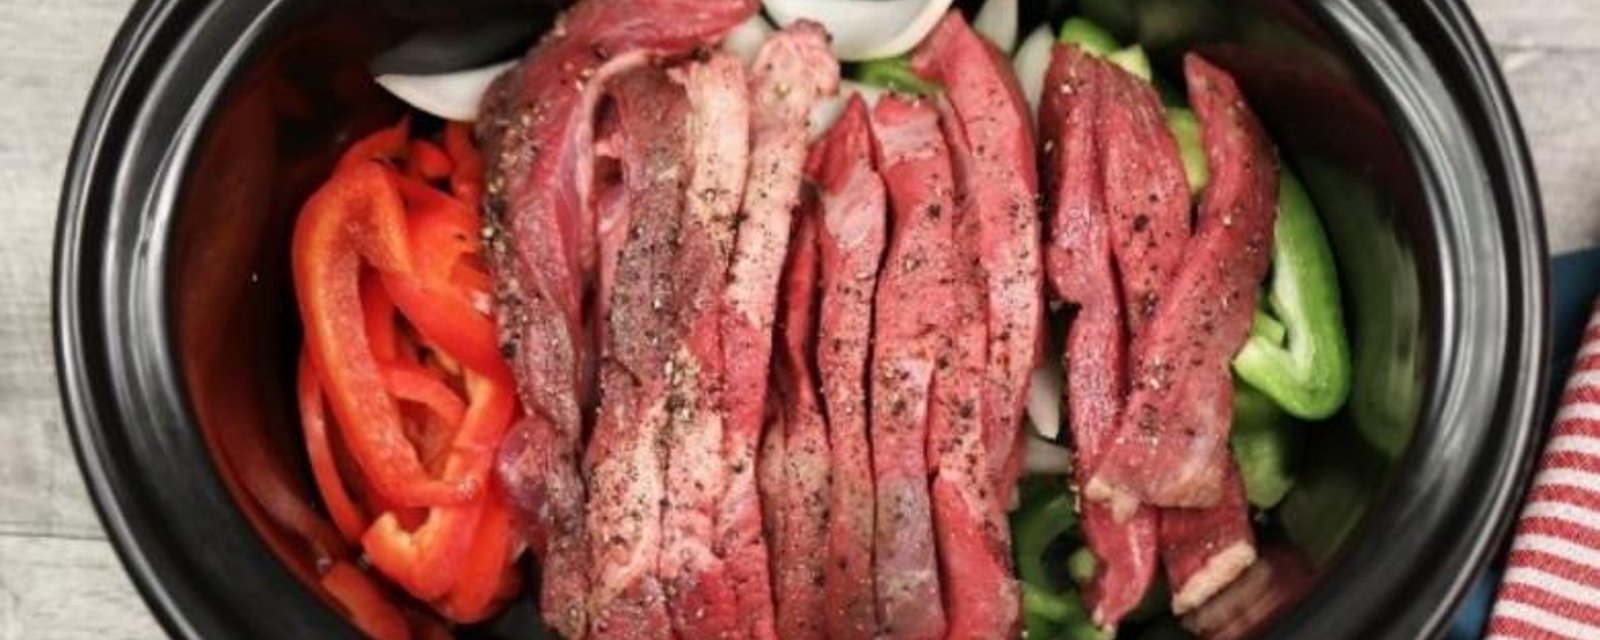 Elle met des oignons, des poivrons et des lanières de boeuf dans sa mijoteuse afin de créer le meilleur pepper steak 